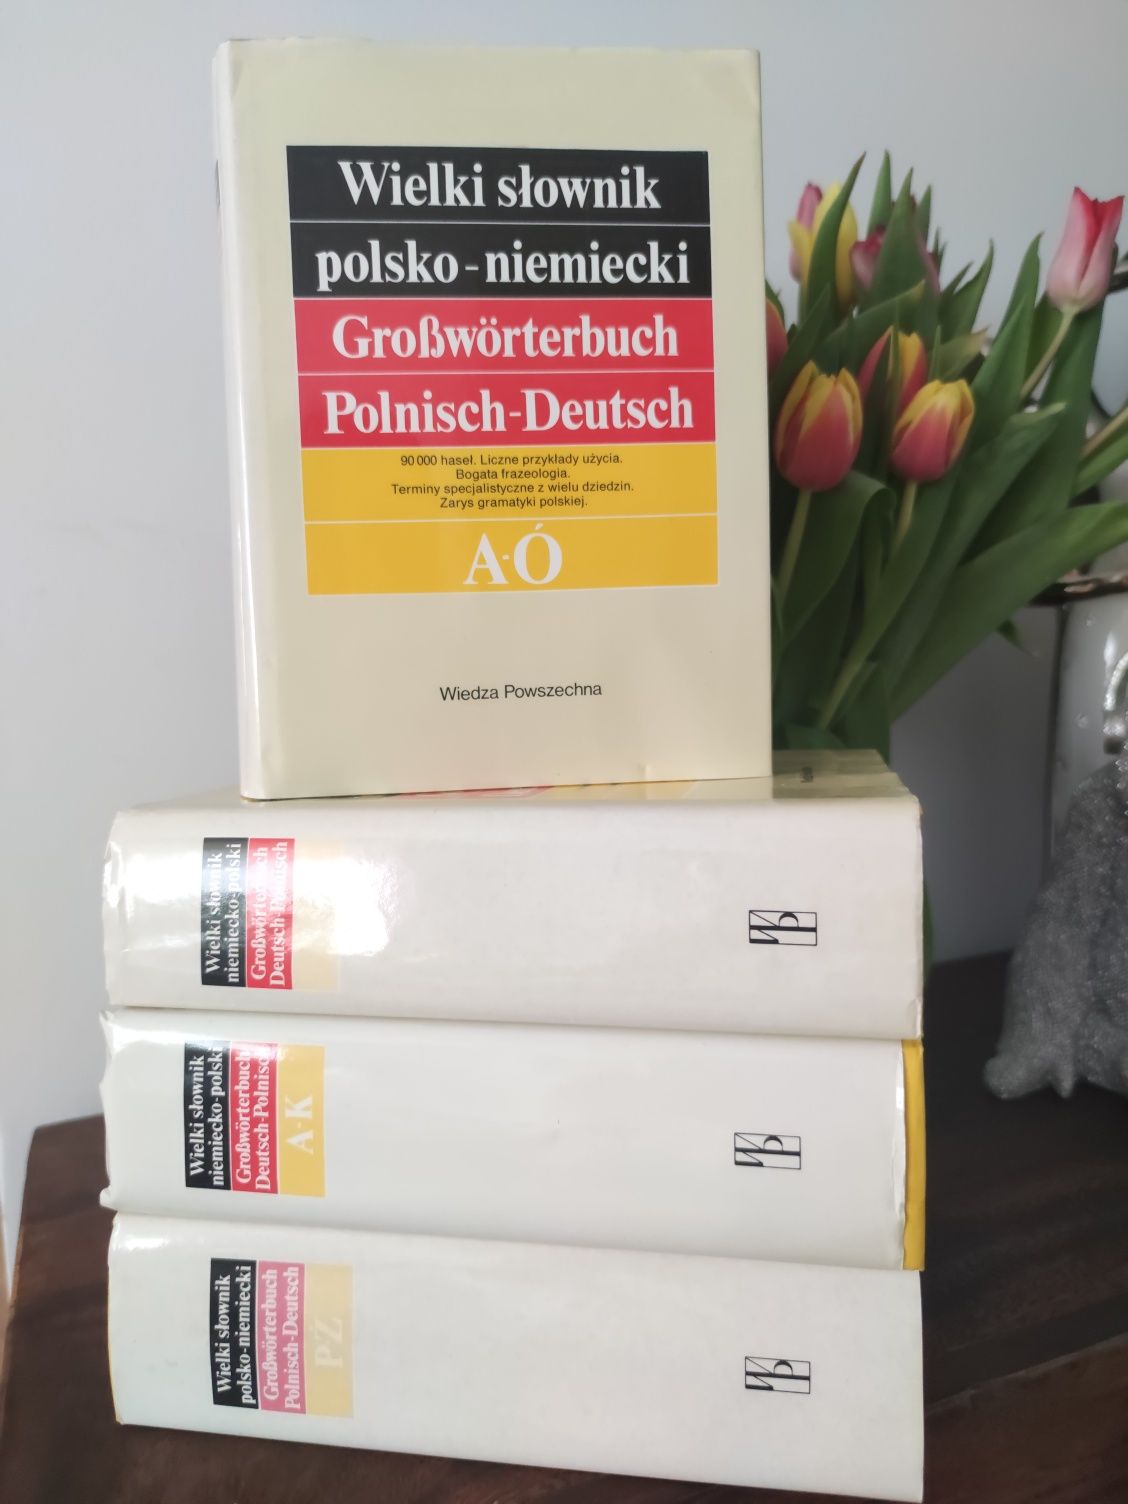 Wielki Słownik polsko - niemiecki